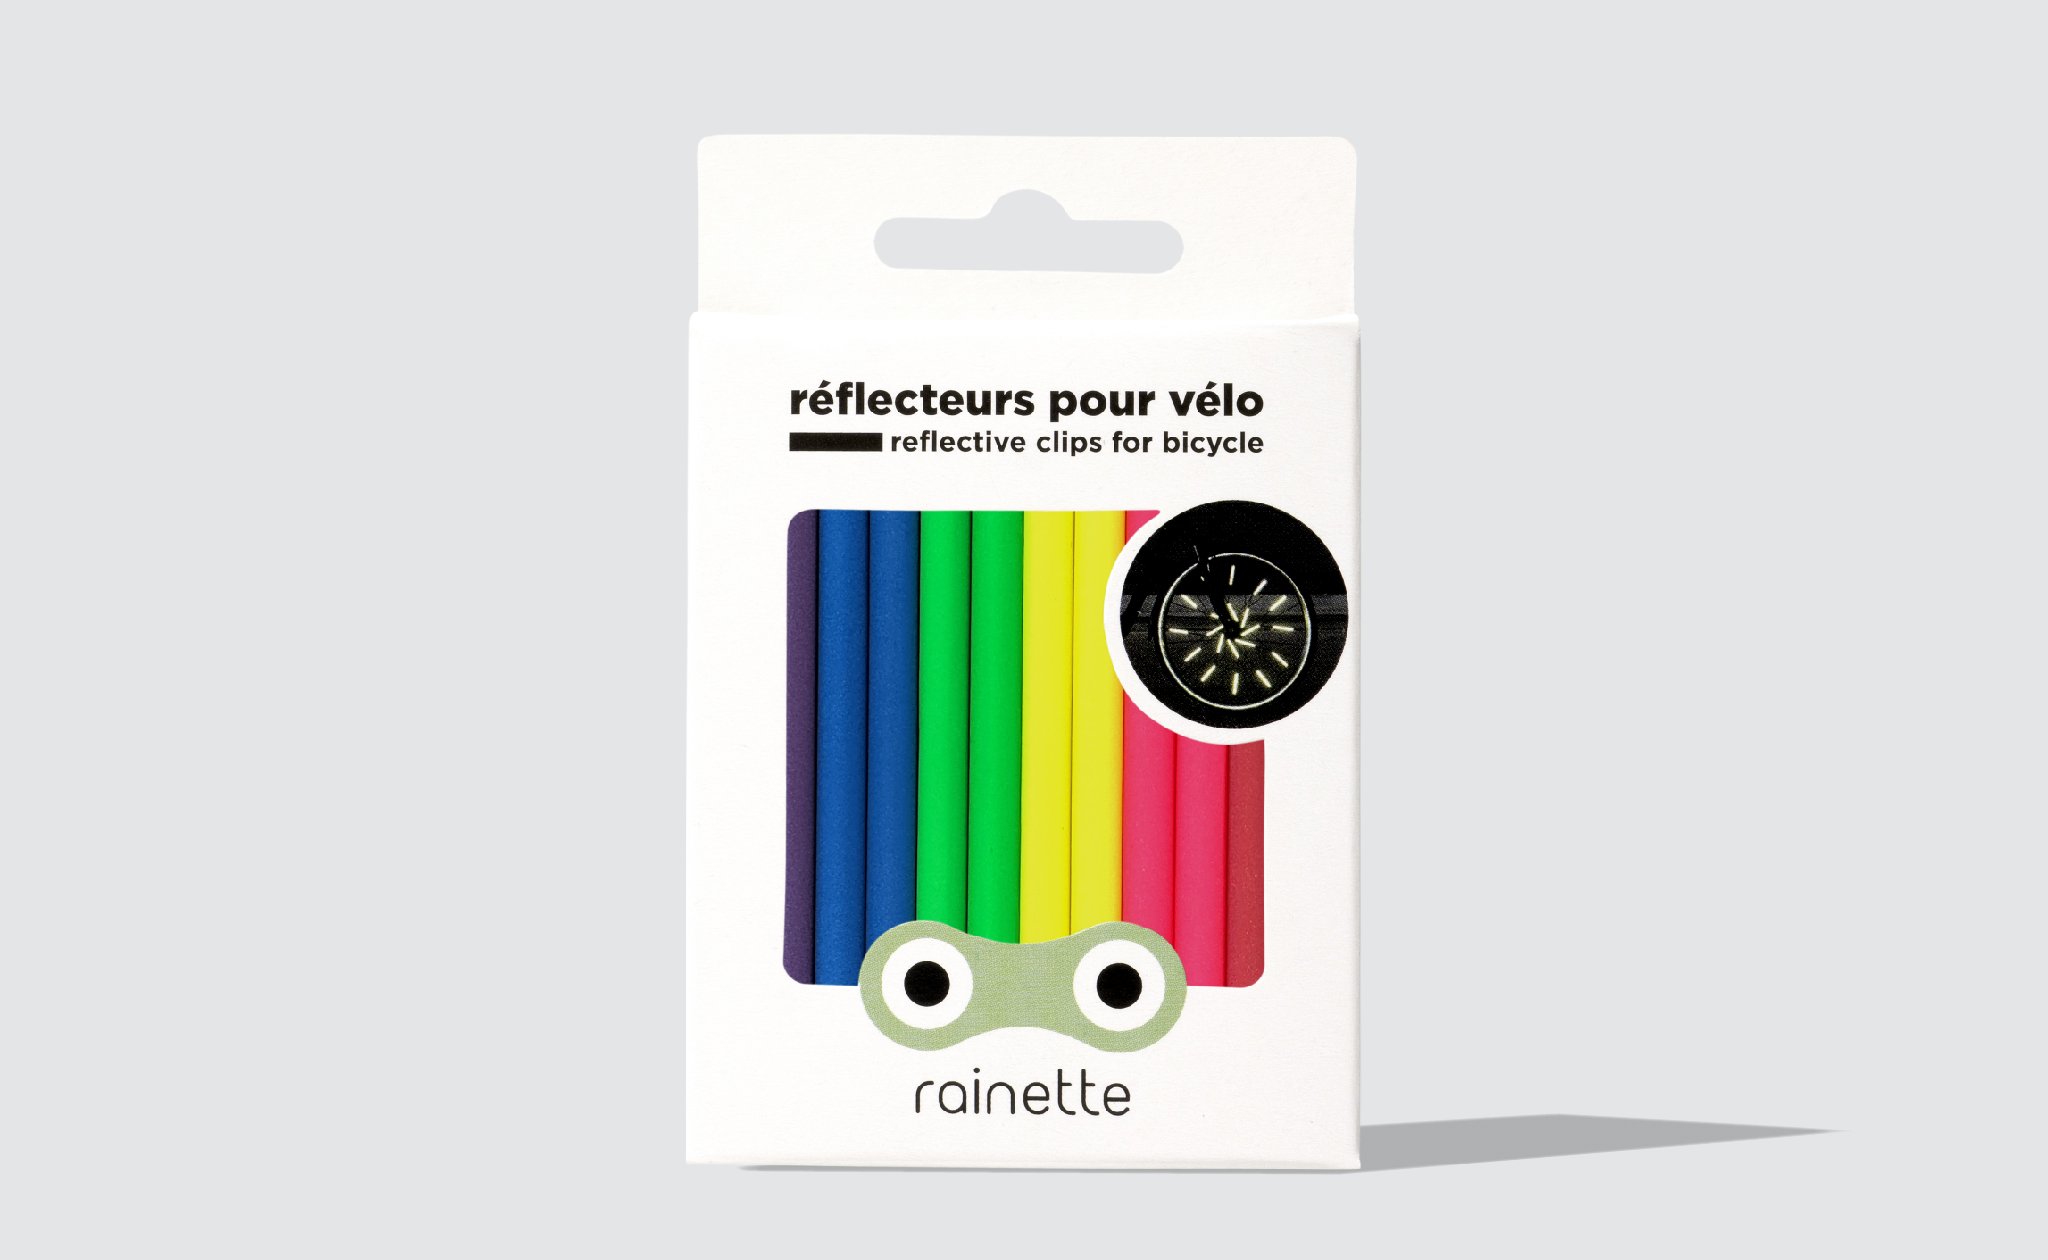 visibilite-roue-velo_reflecteurs-fluo-couleurs-variete-colore-jour